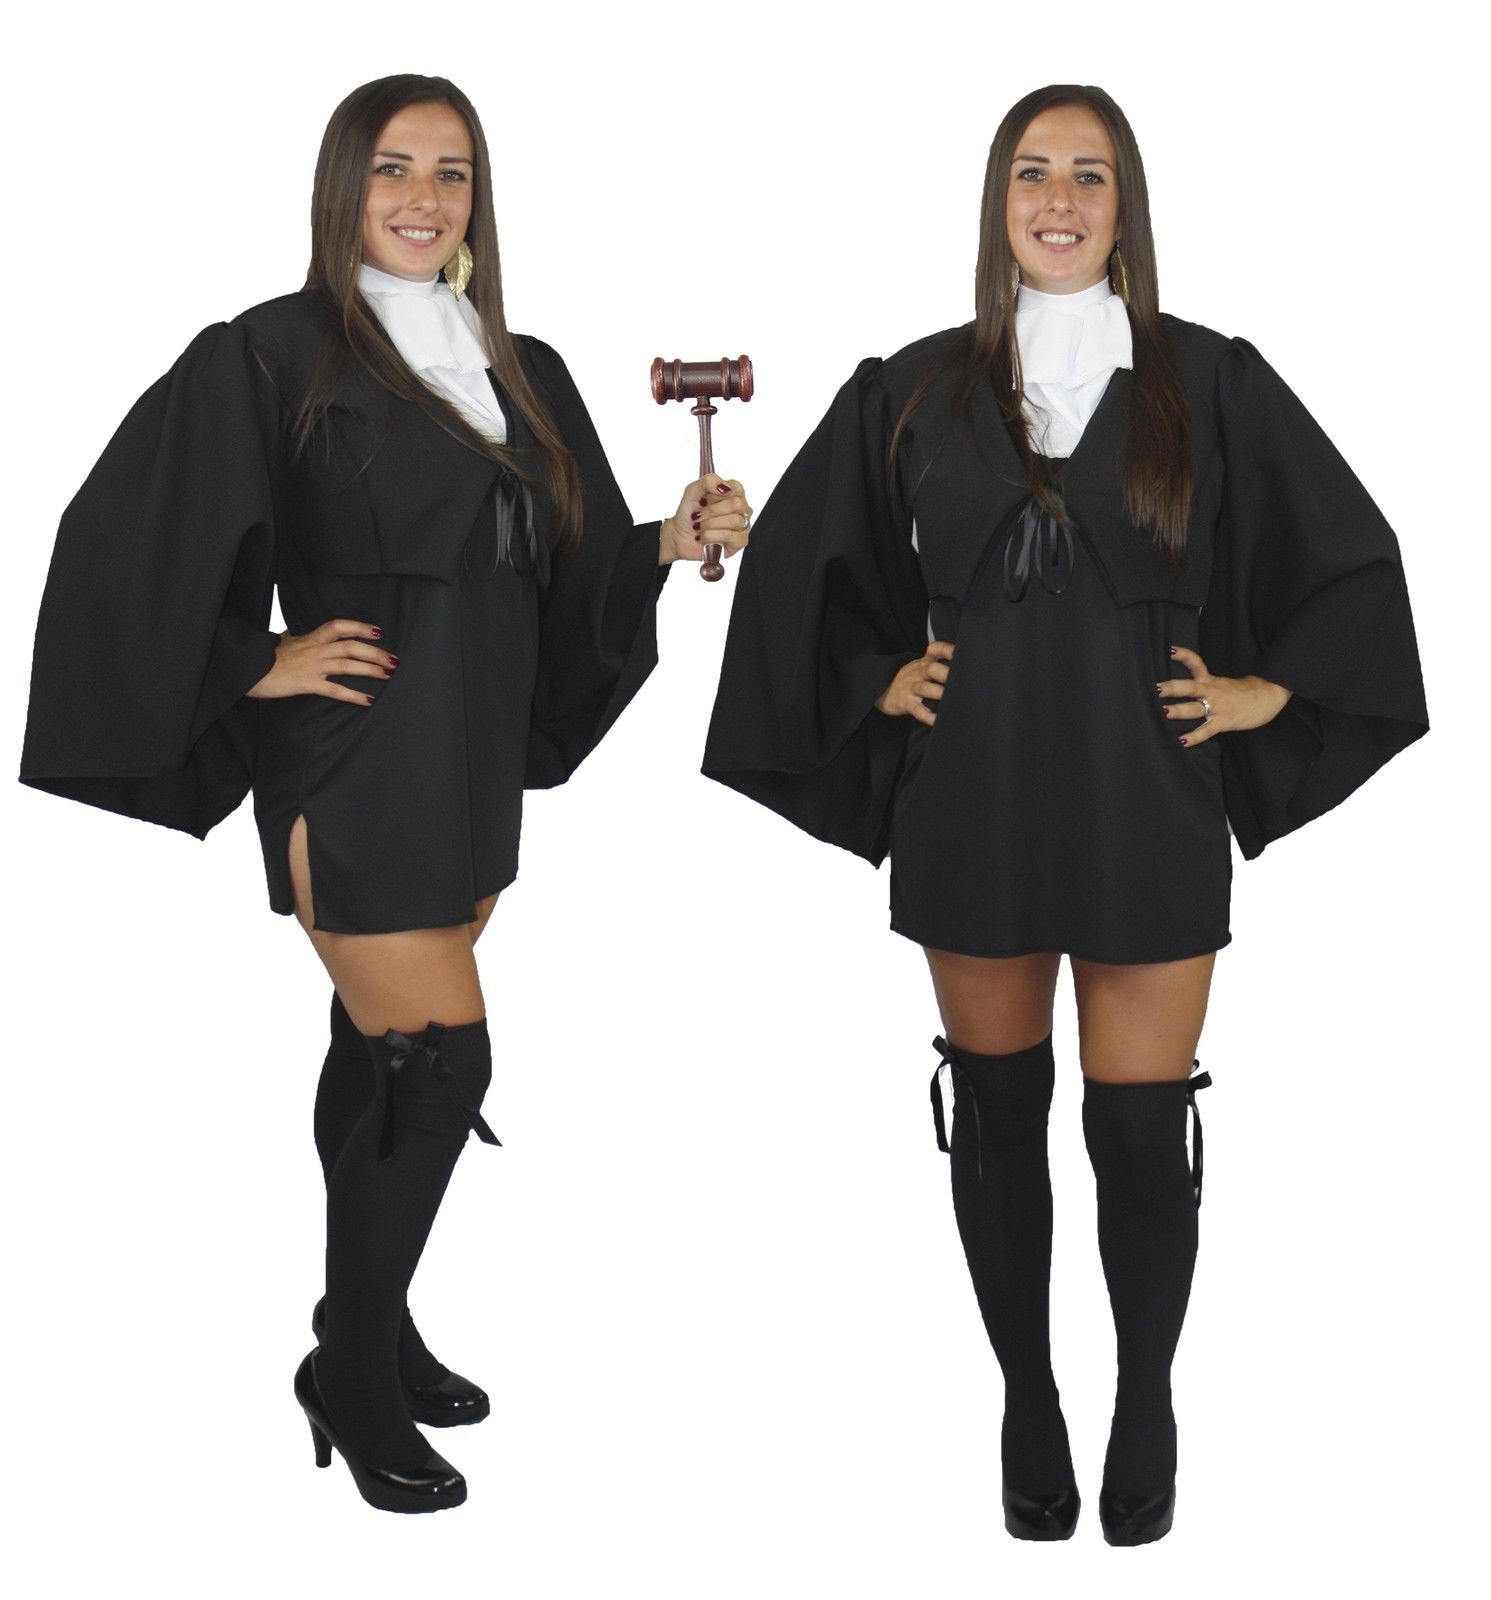 2. Костюм судьи - Религиозная одежда на Хэллоуин повергла.